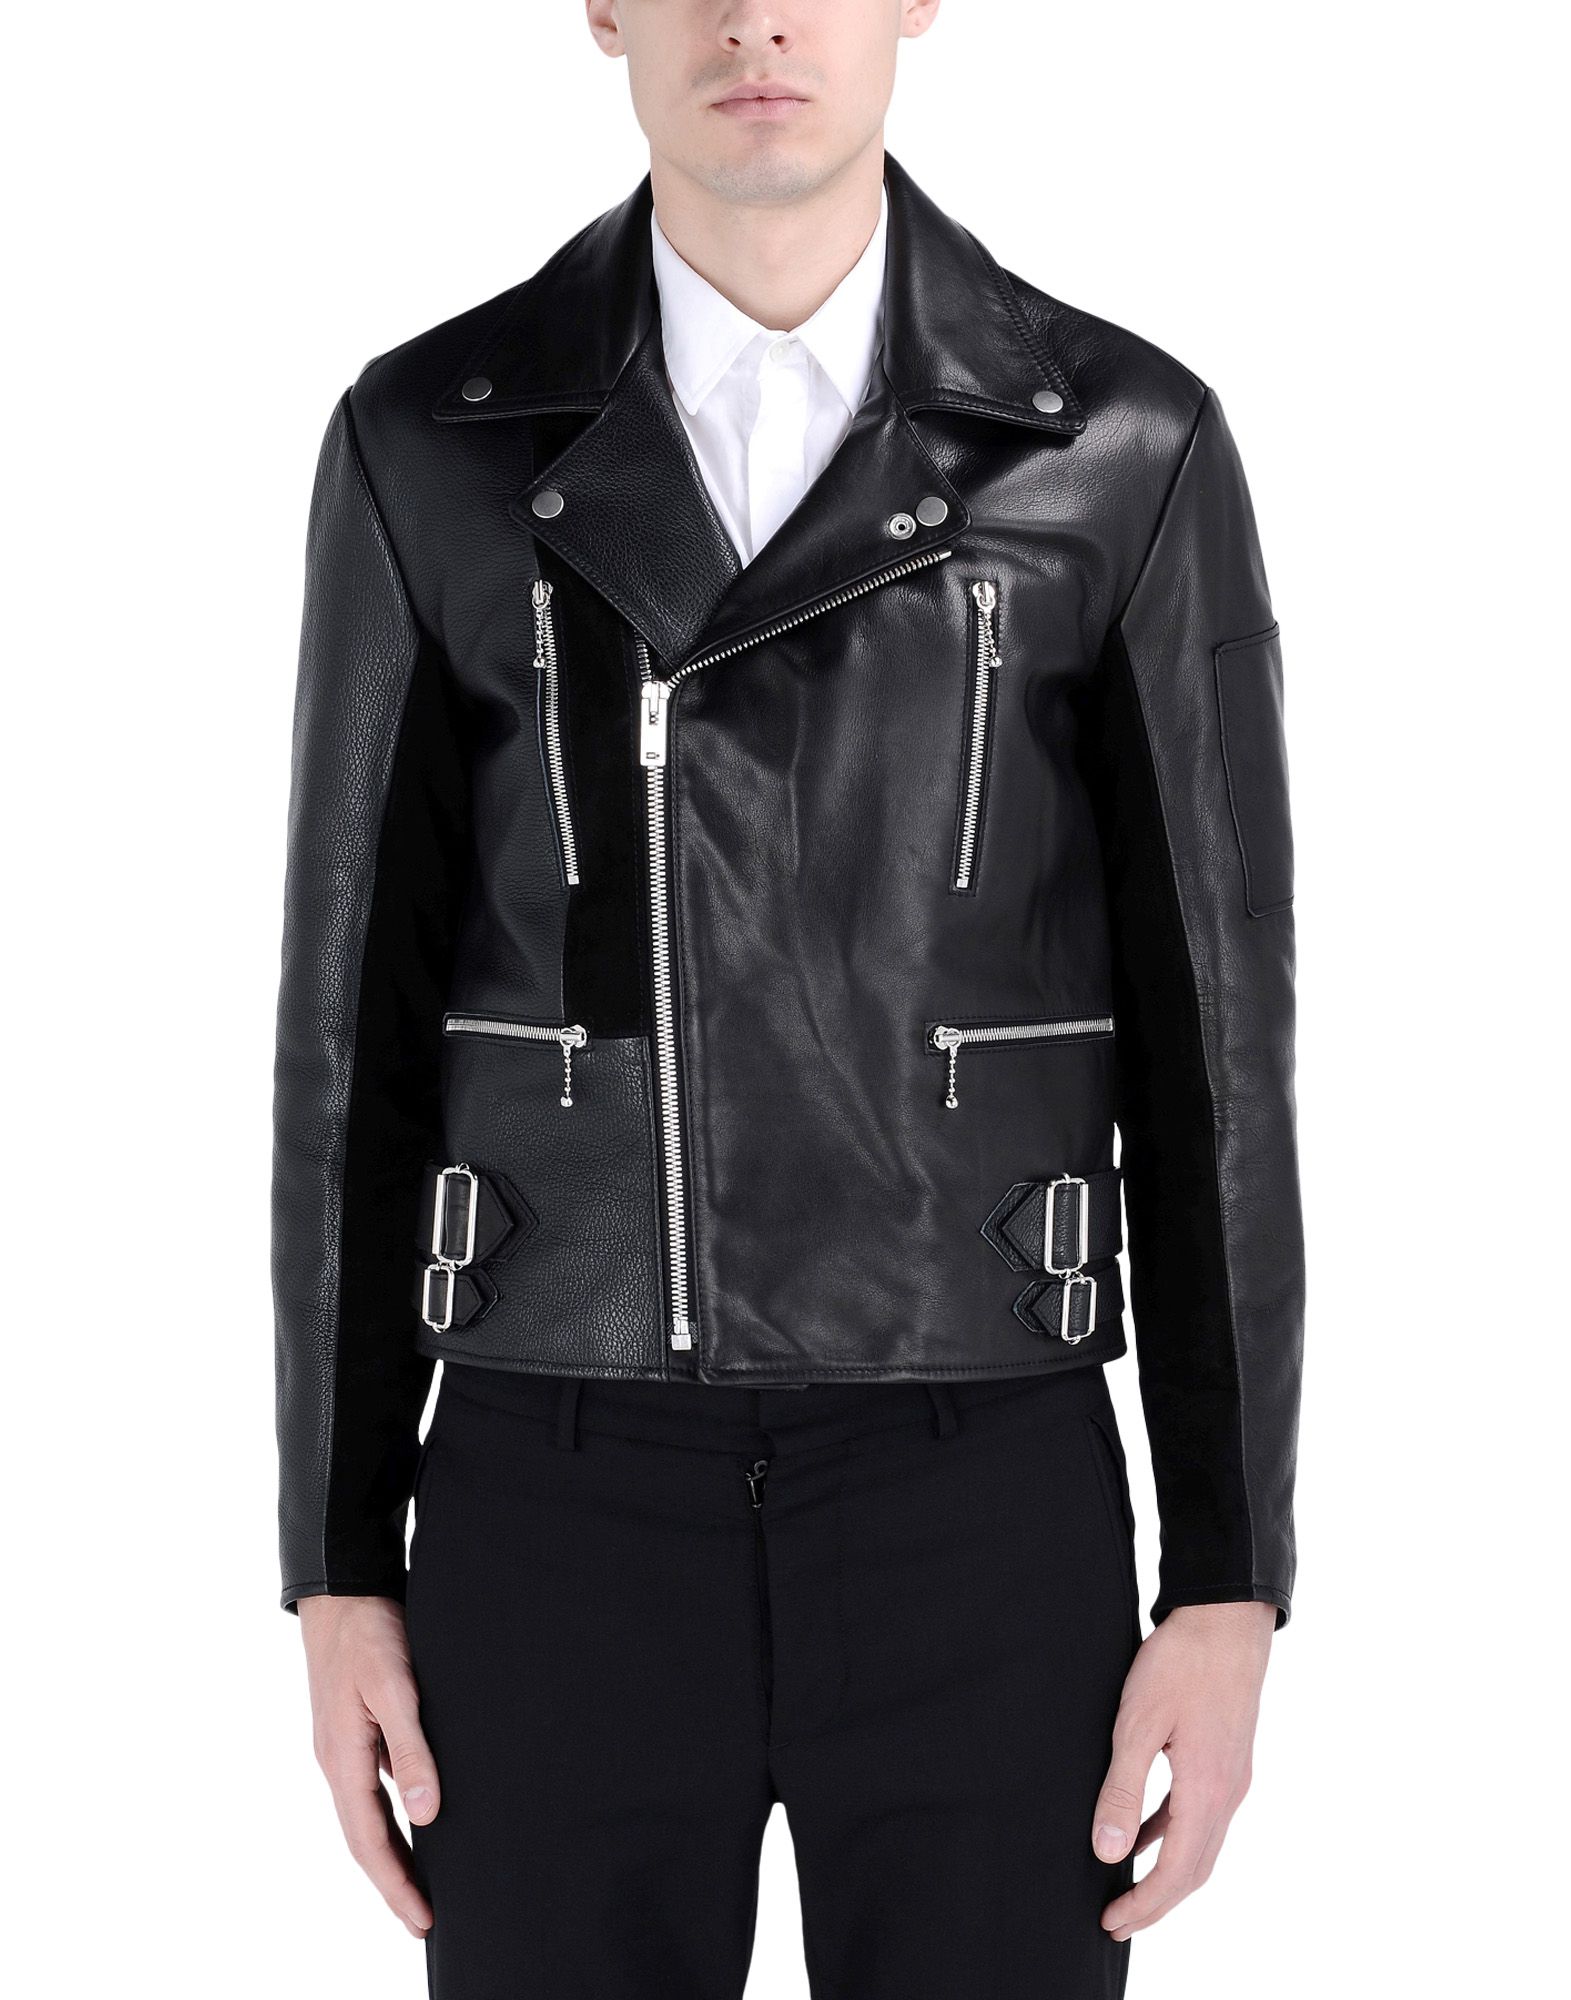 Maison Margiela 10 | Textured leather jacket. | Leather jacket, Leather ...